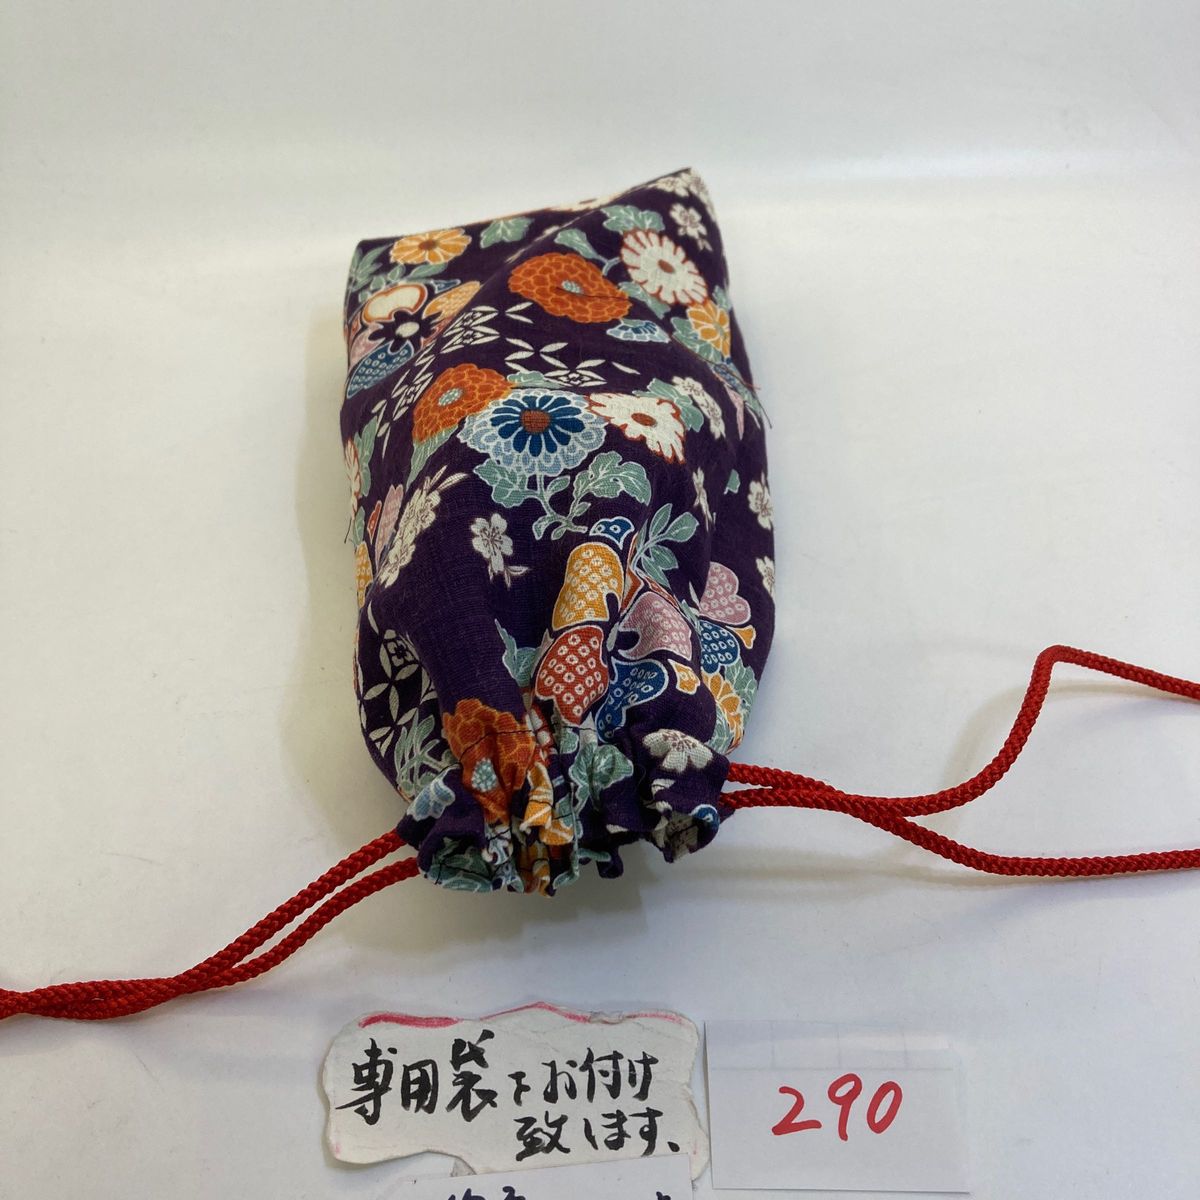 線香筒:畳は市松グリーン、綺麗な花柄のお線香筒No.290